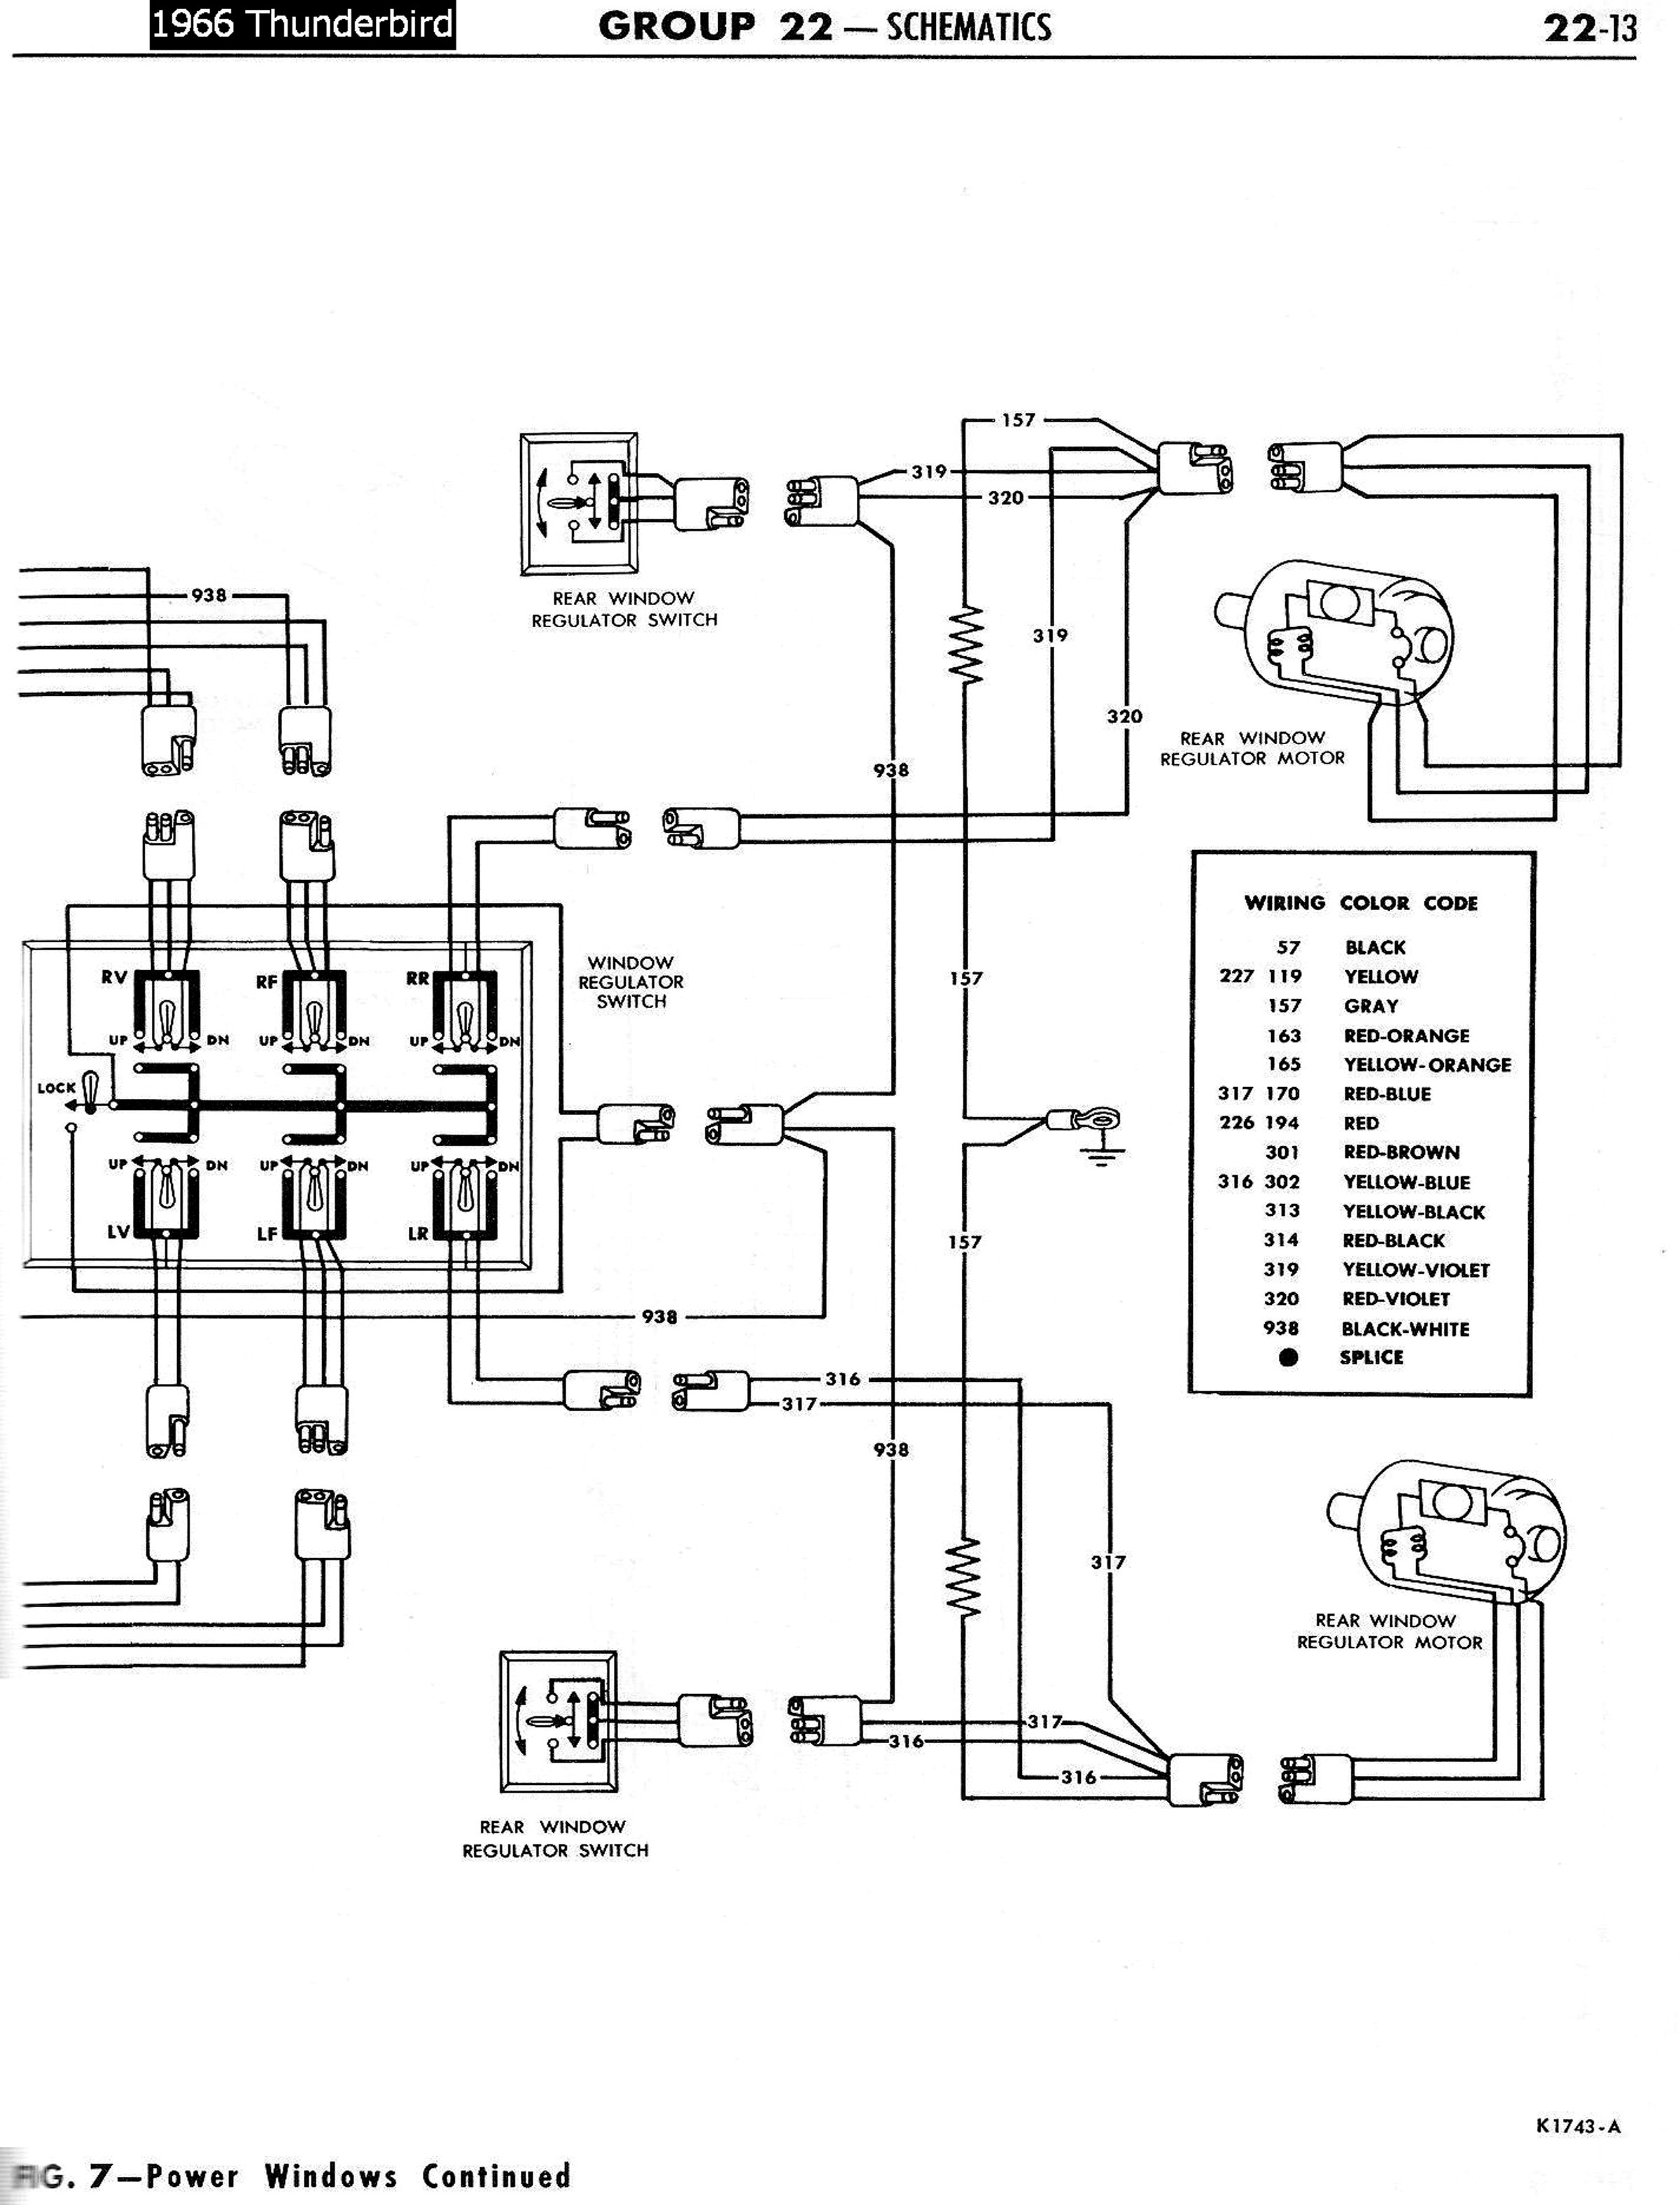 1958 68 Ford Electrical Schematics Headlight Wiring Diagram 1965 T Bird Wiring Diagram Turn Signals